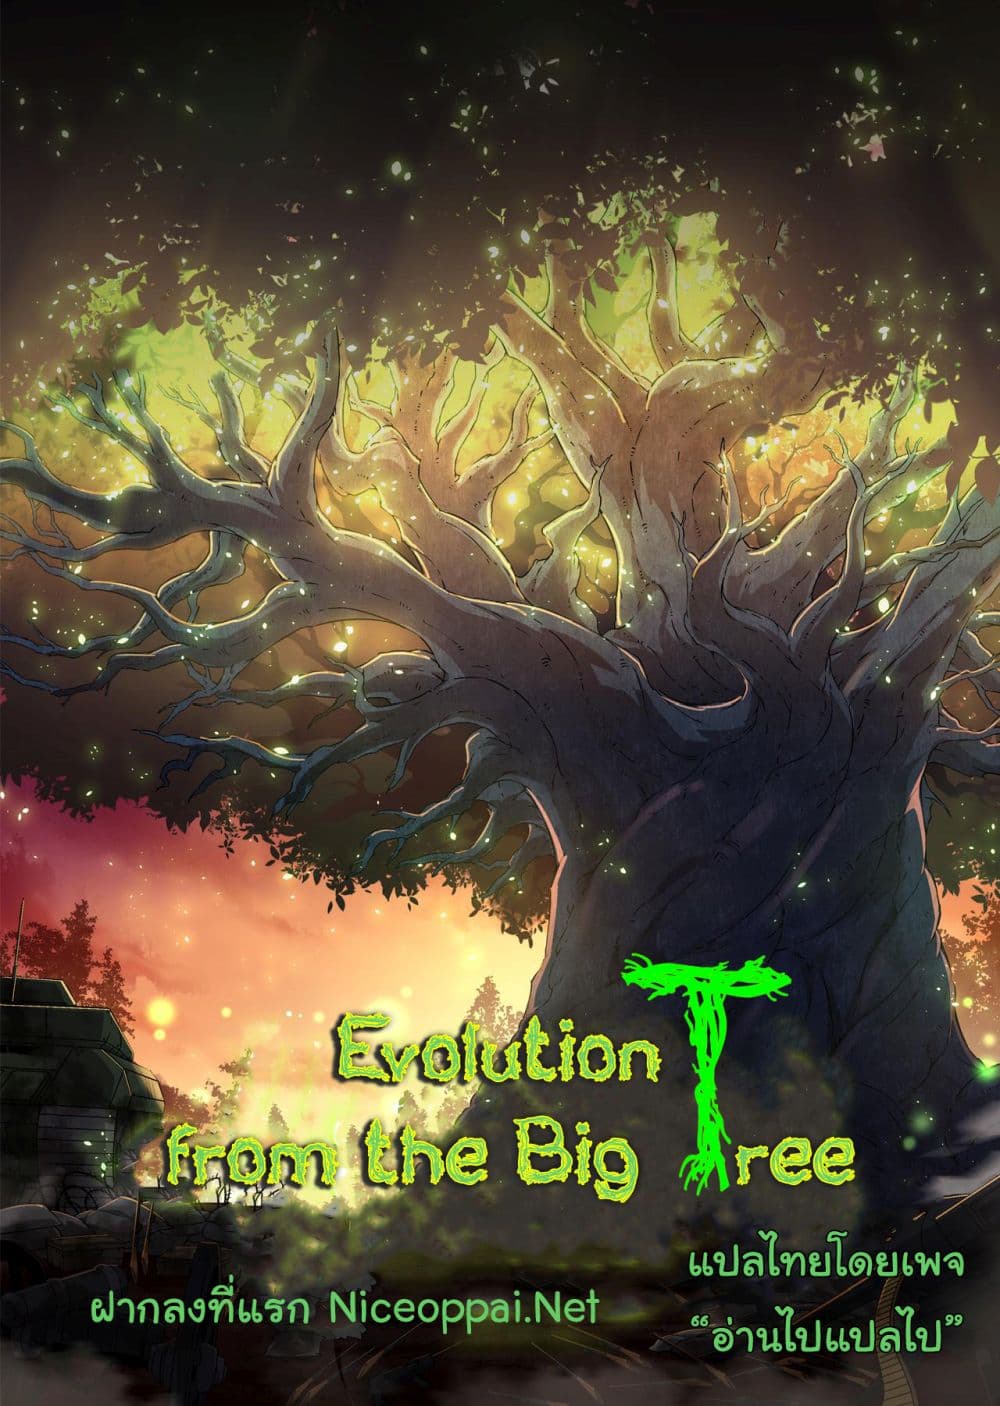 Evolution from the Big Tree Ã Â¸â€¢Ã Â¸Â­Ã Â¸â„¢Ã Â¸â€”Ã Â¸ÂµÃ Â¹Ë† 10 (1)